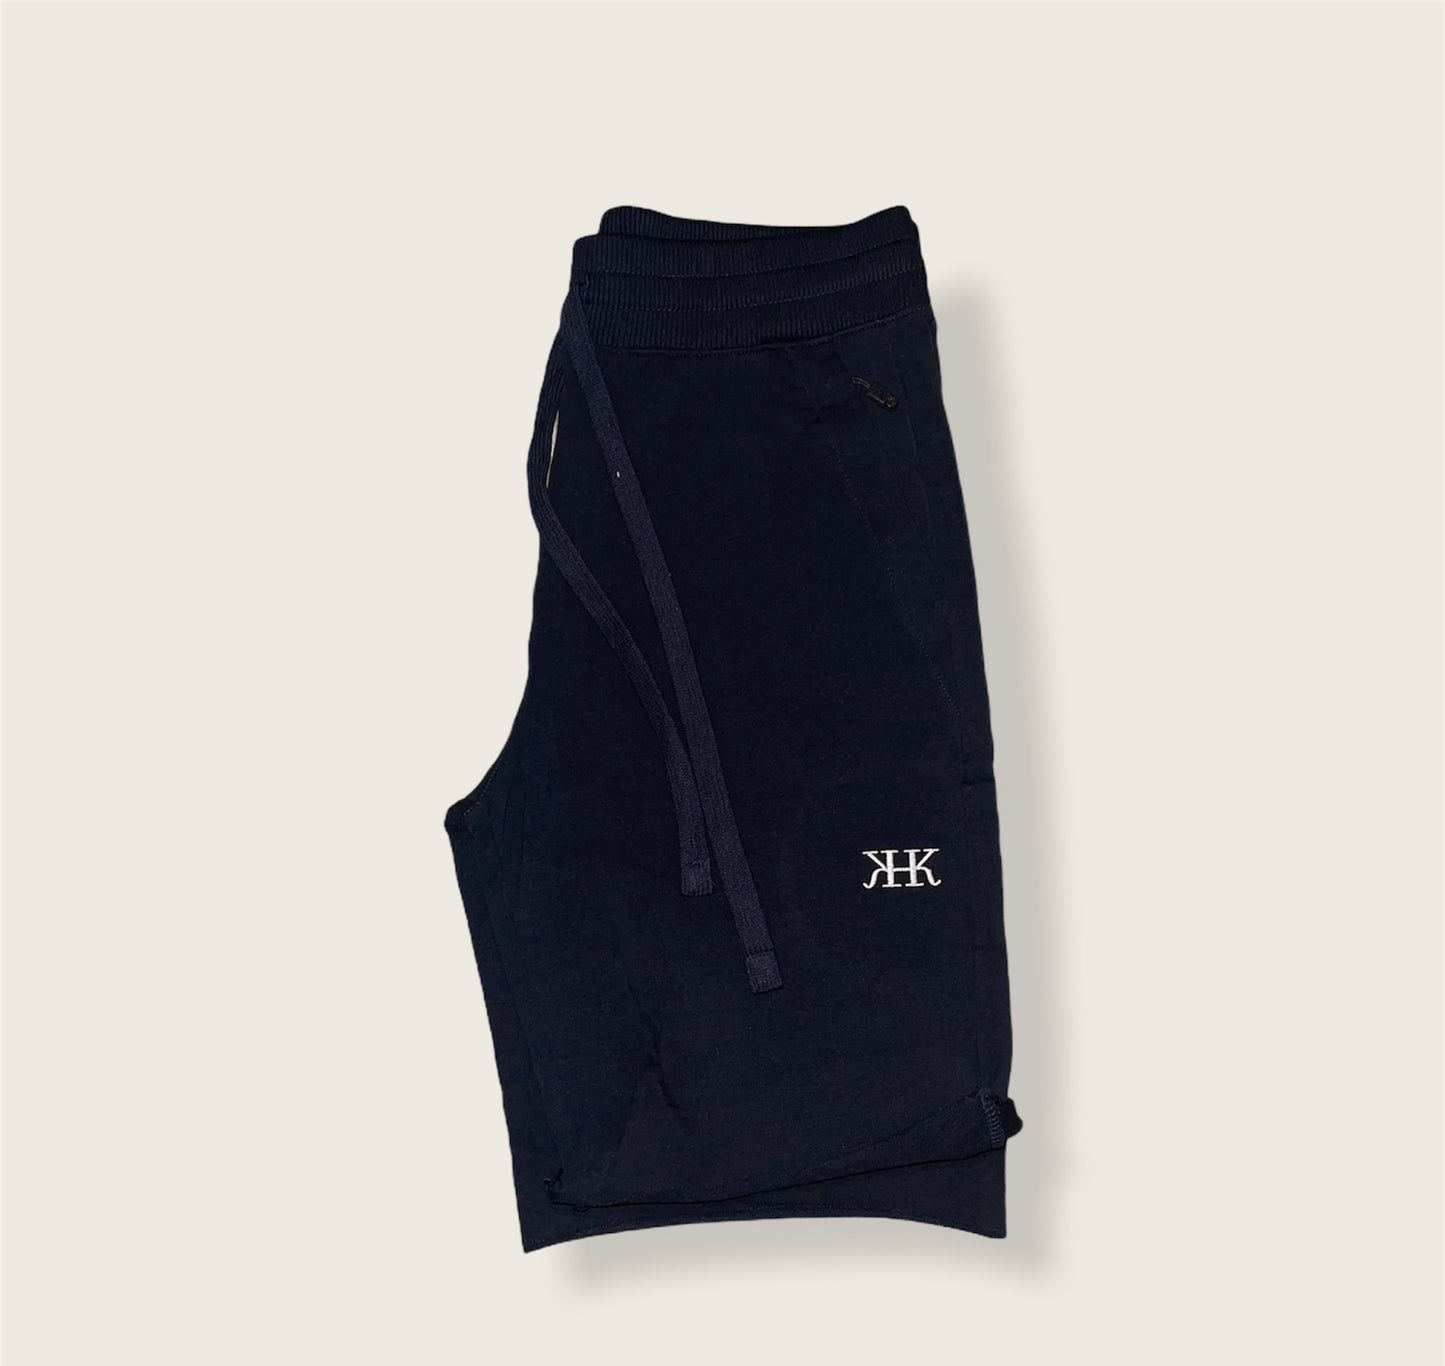 "HKK" Shorts